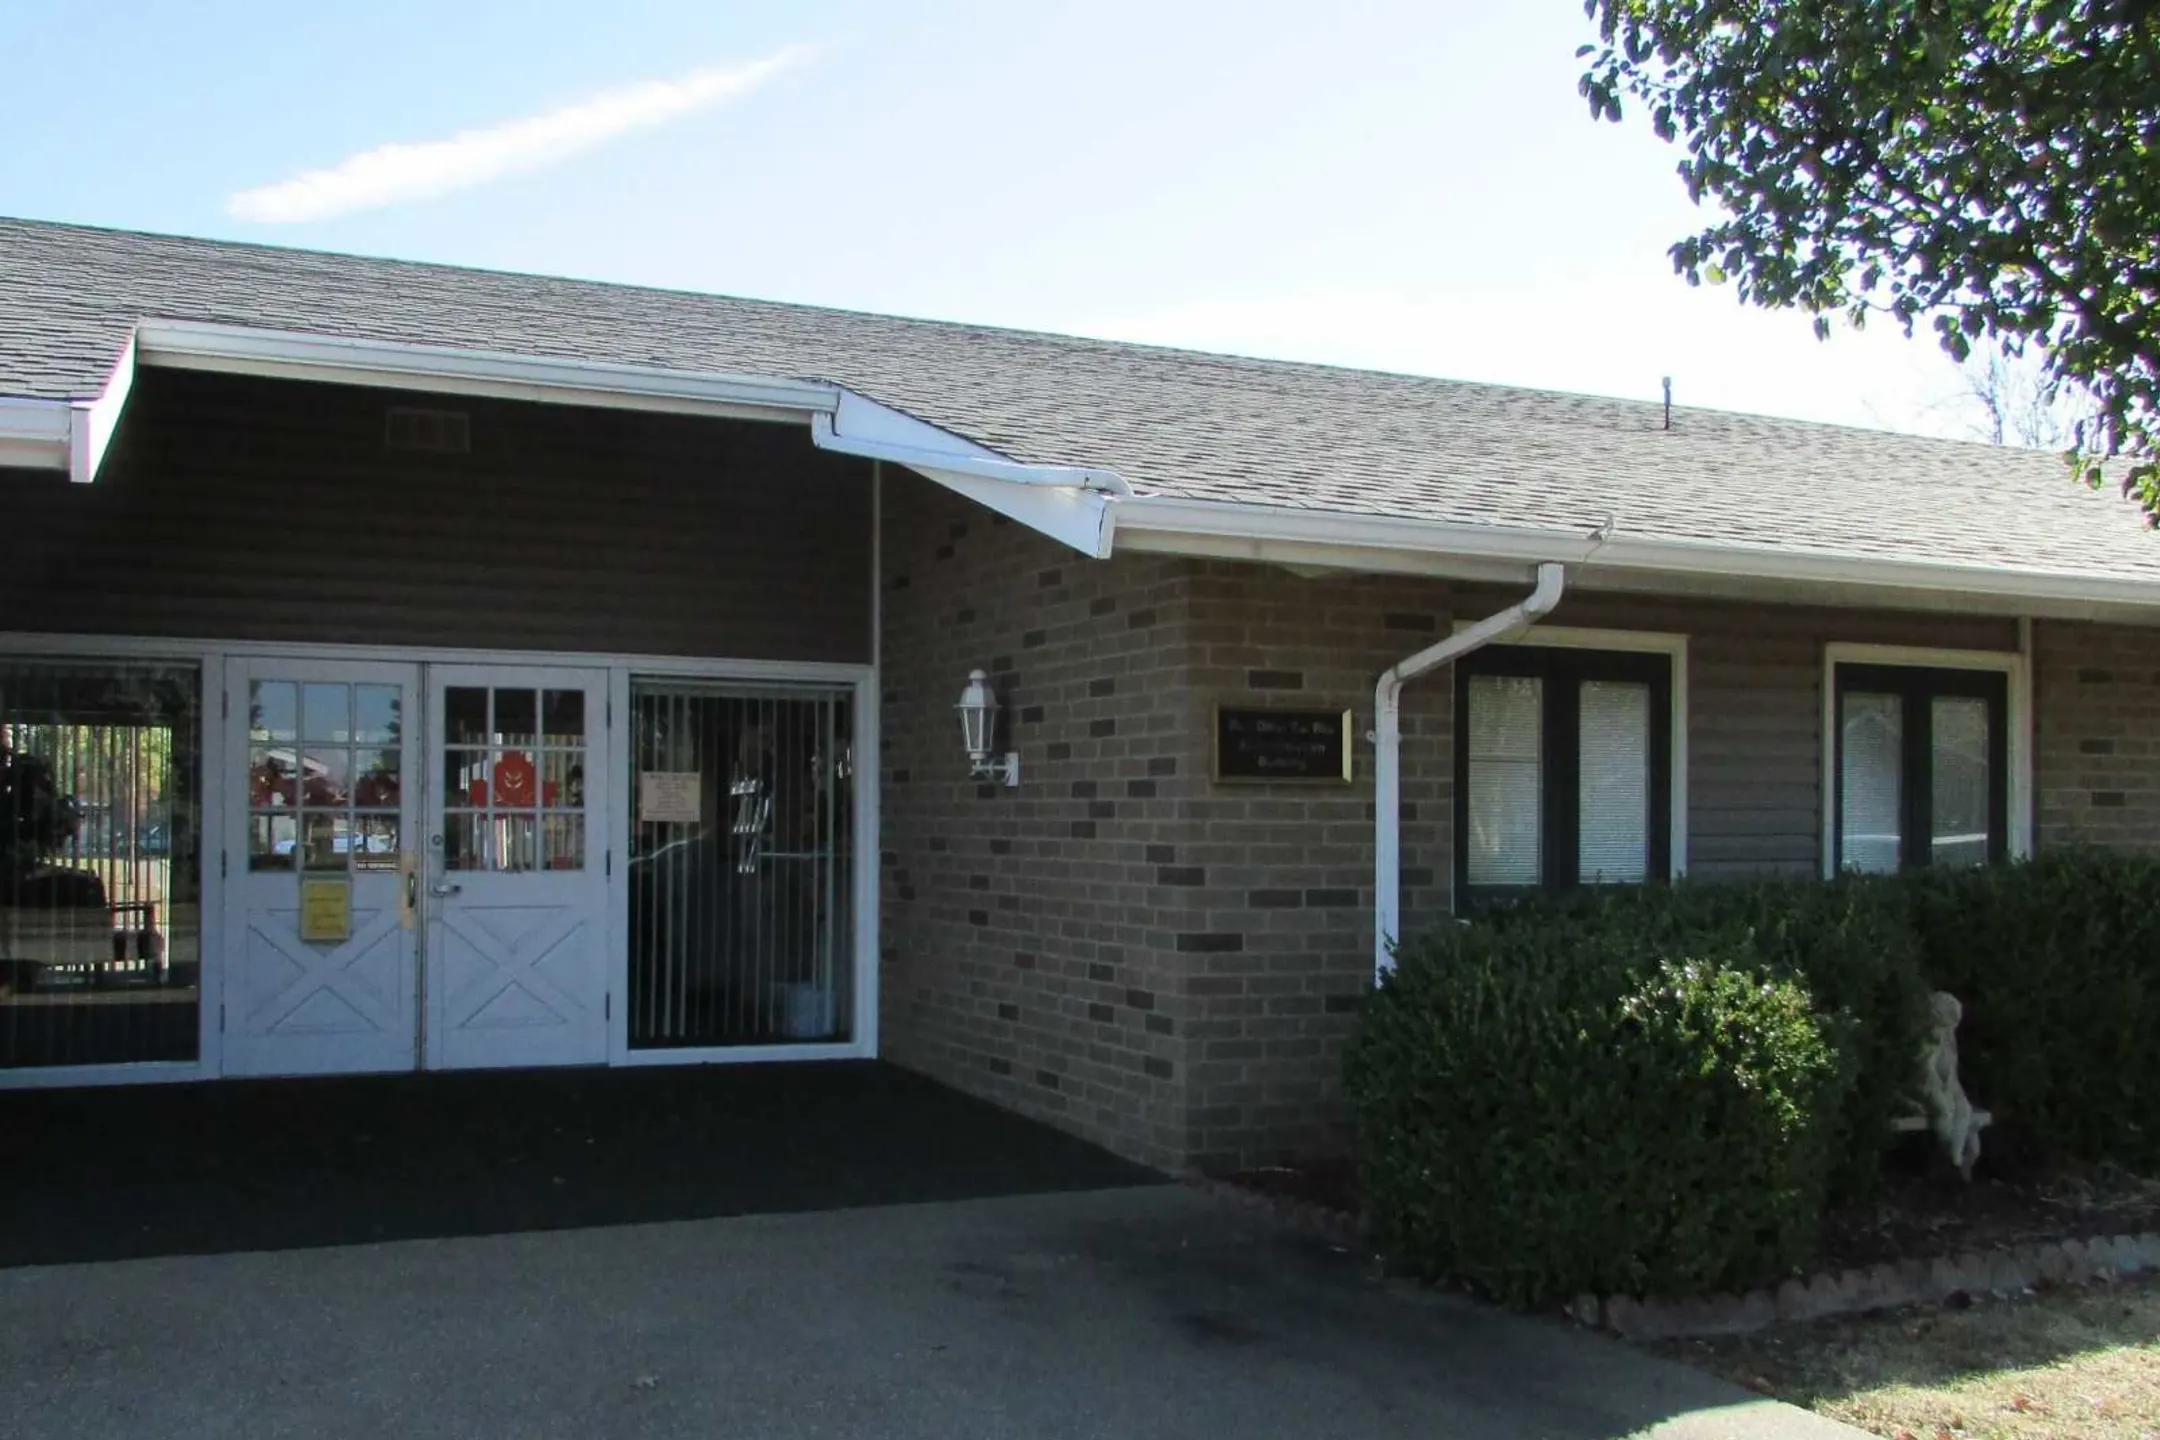 Building - Horizon Homes Retirement Community - Evansville, IN